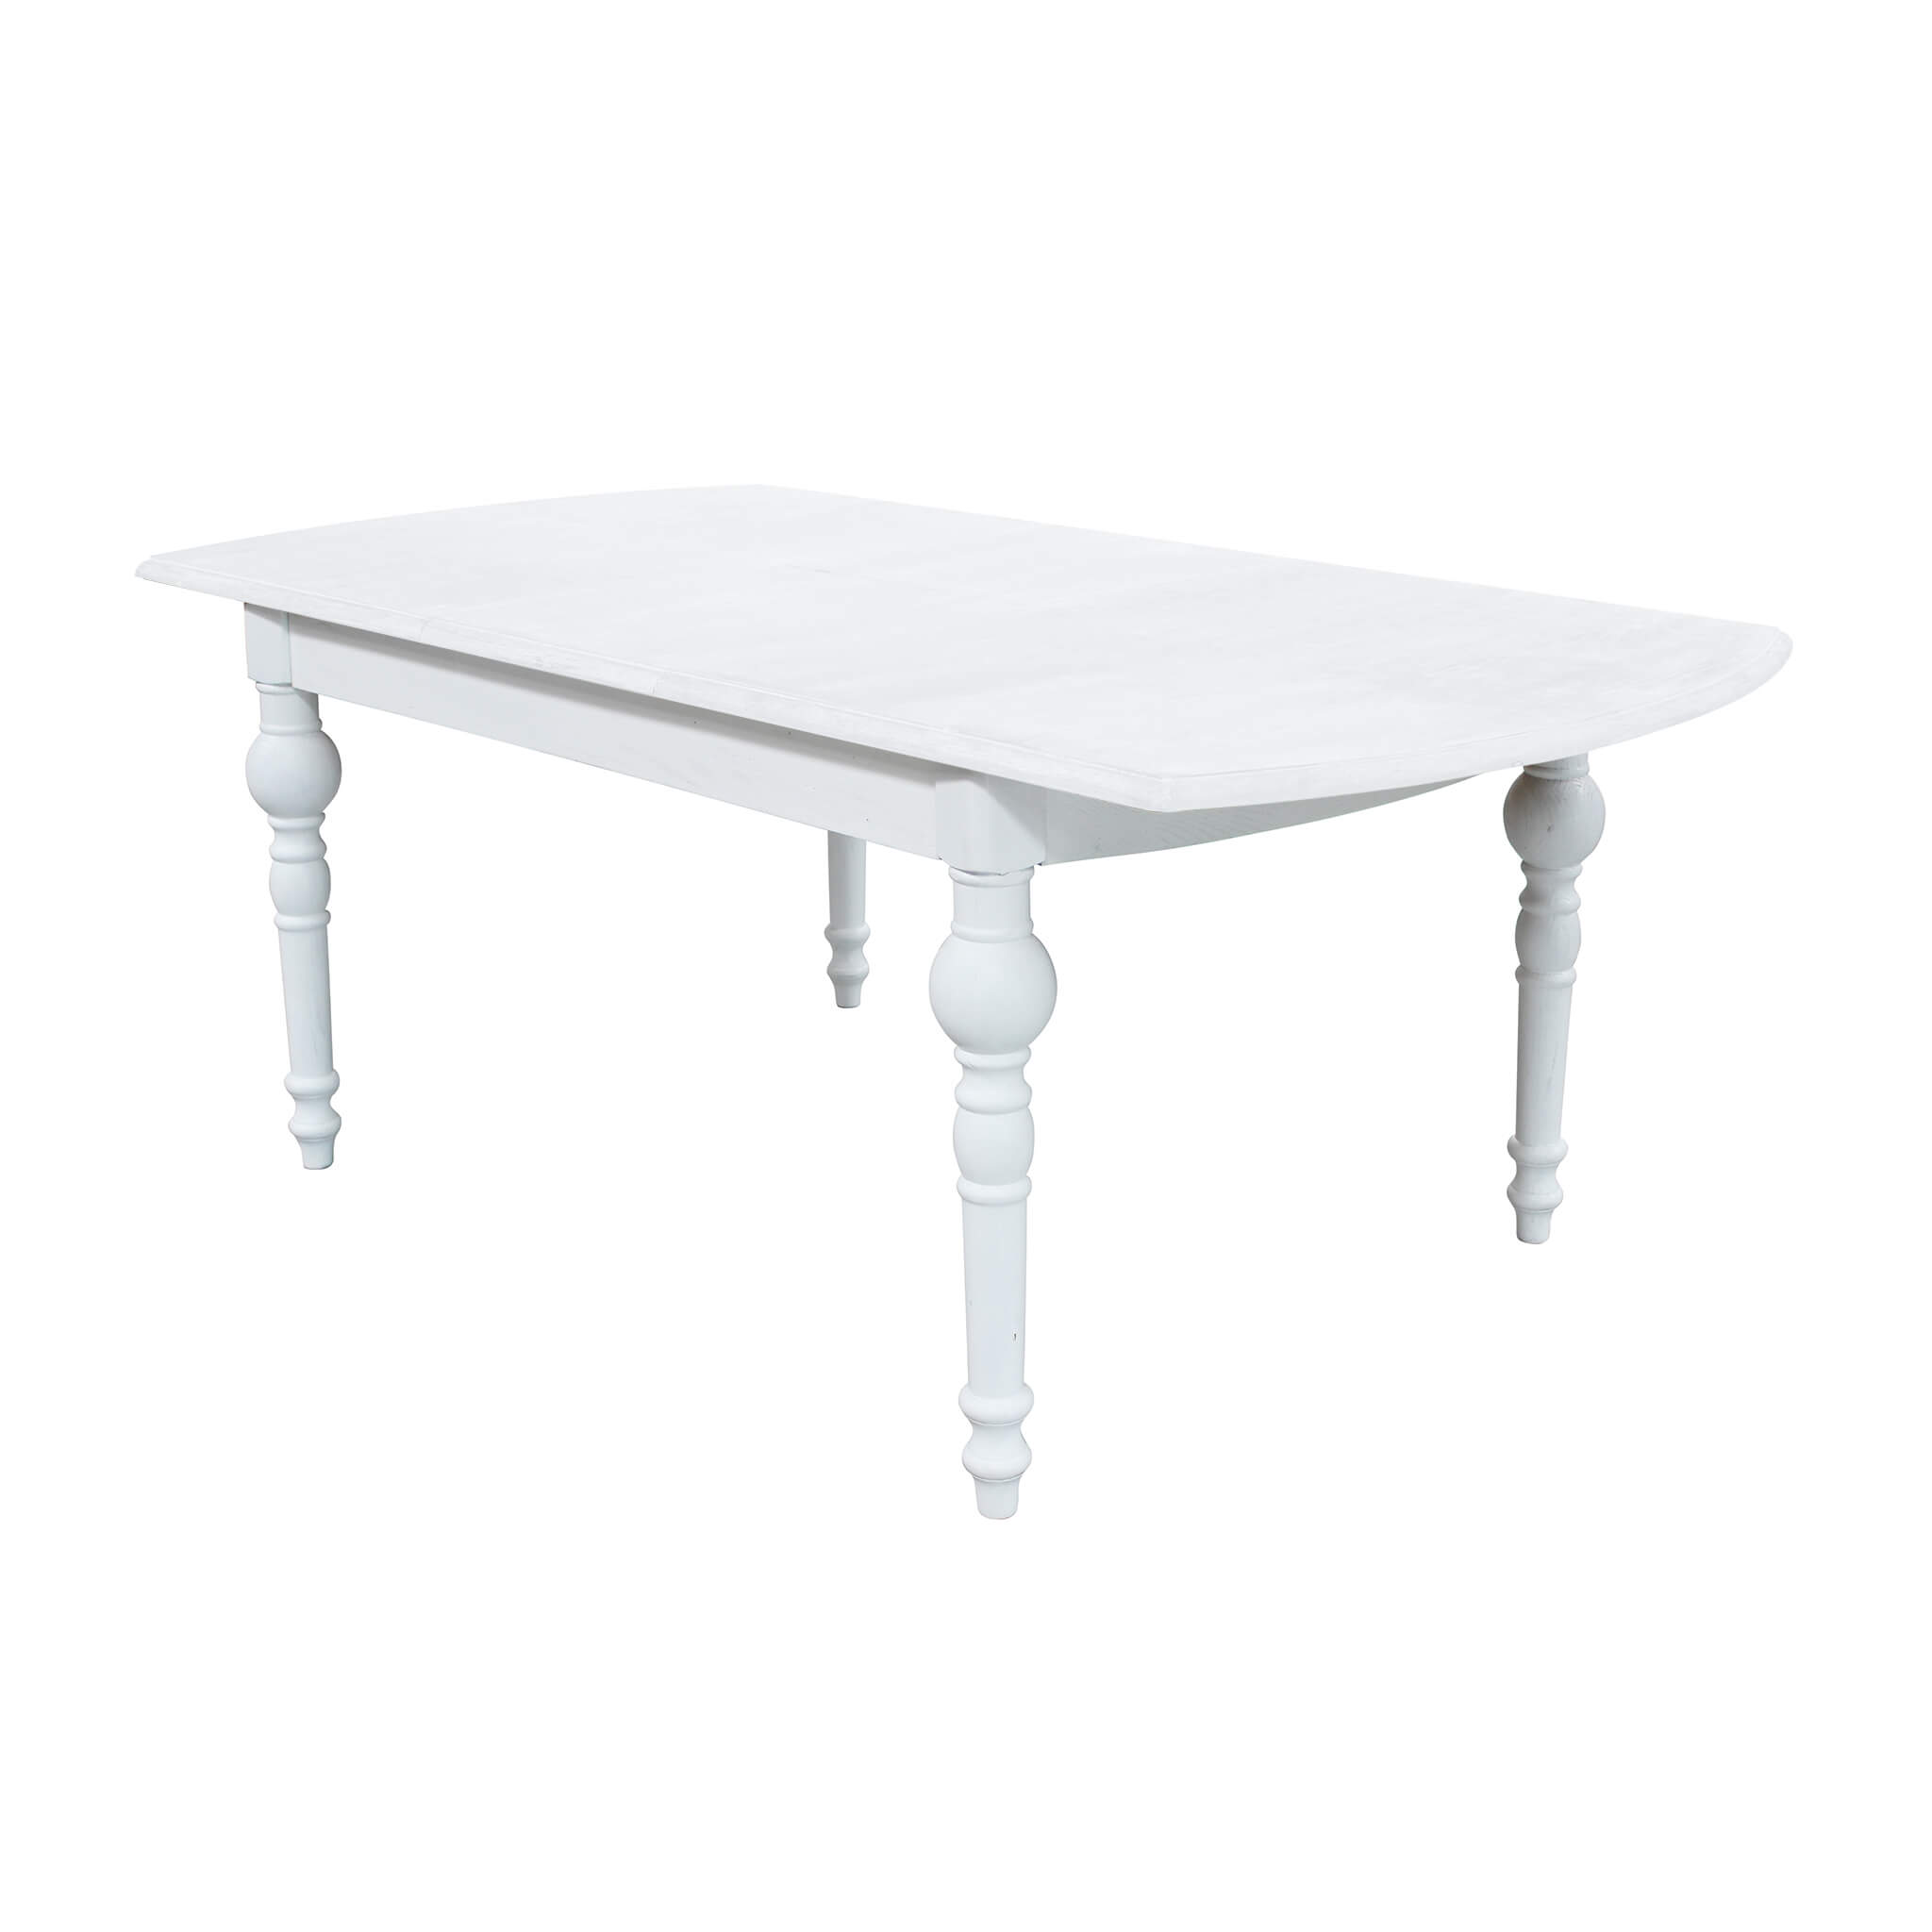 Milani Home tavolo in legno massiccio di design moderno industrial cm 150 x 100 x 75 Bianco 150 x 76 x 100 cm